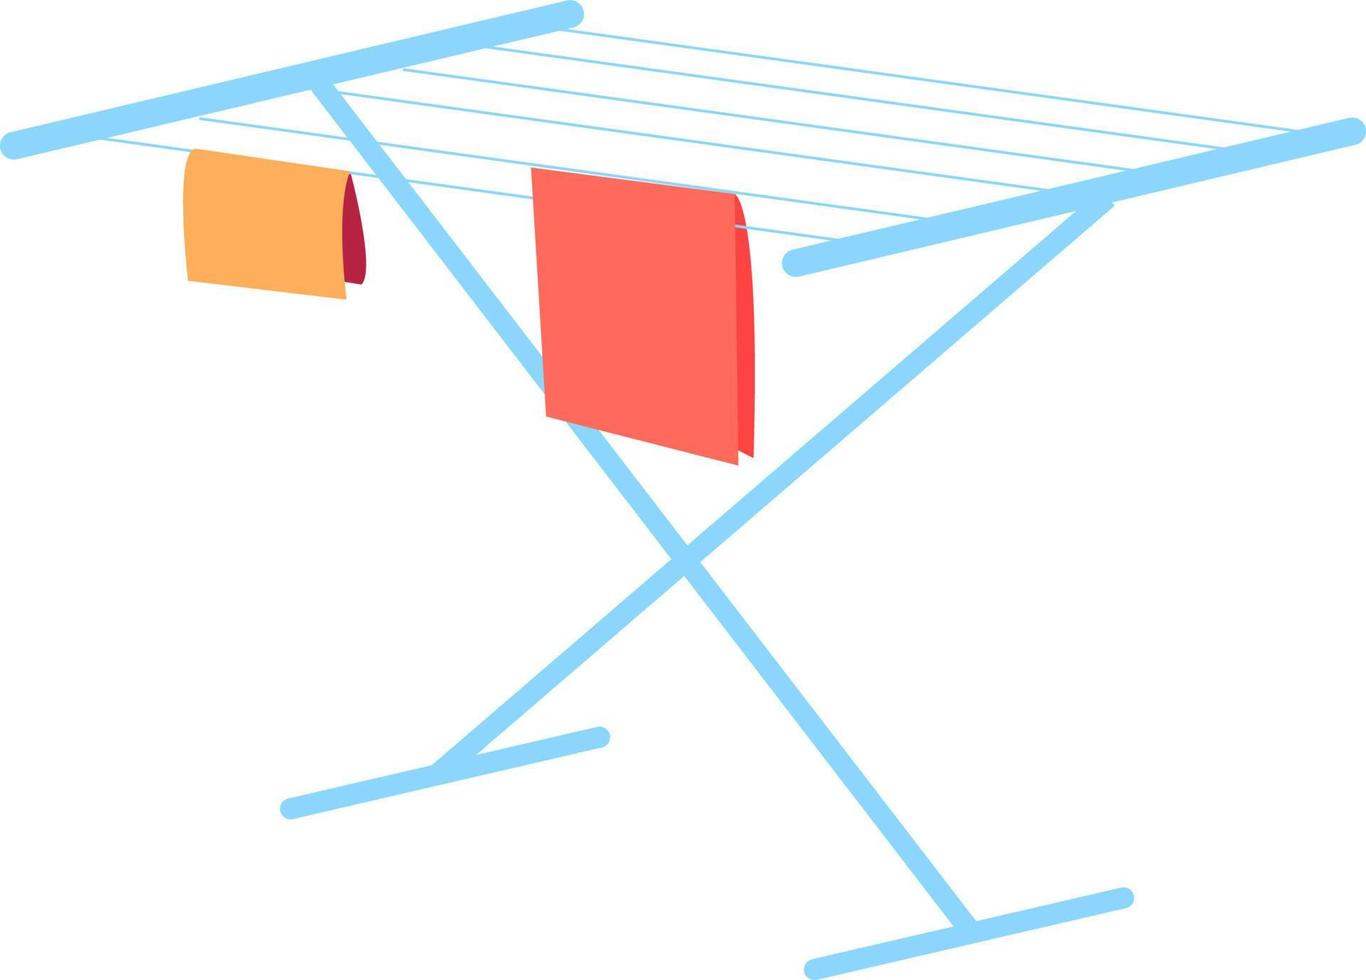 Secadora de ropa, ilustración, vector sobre fondo blanco.